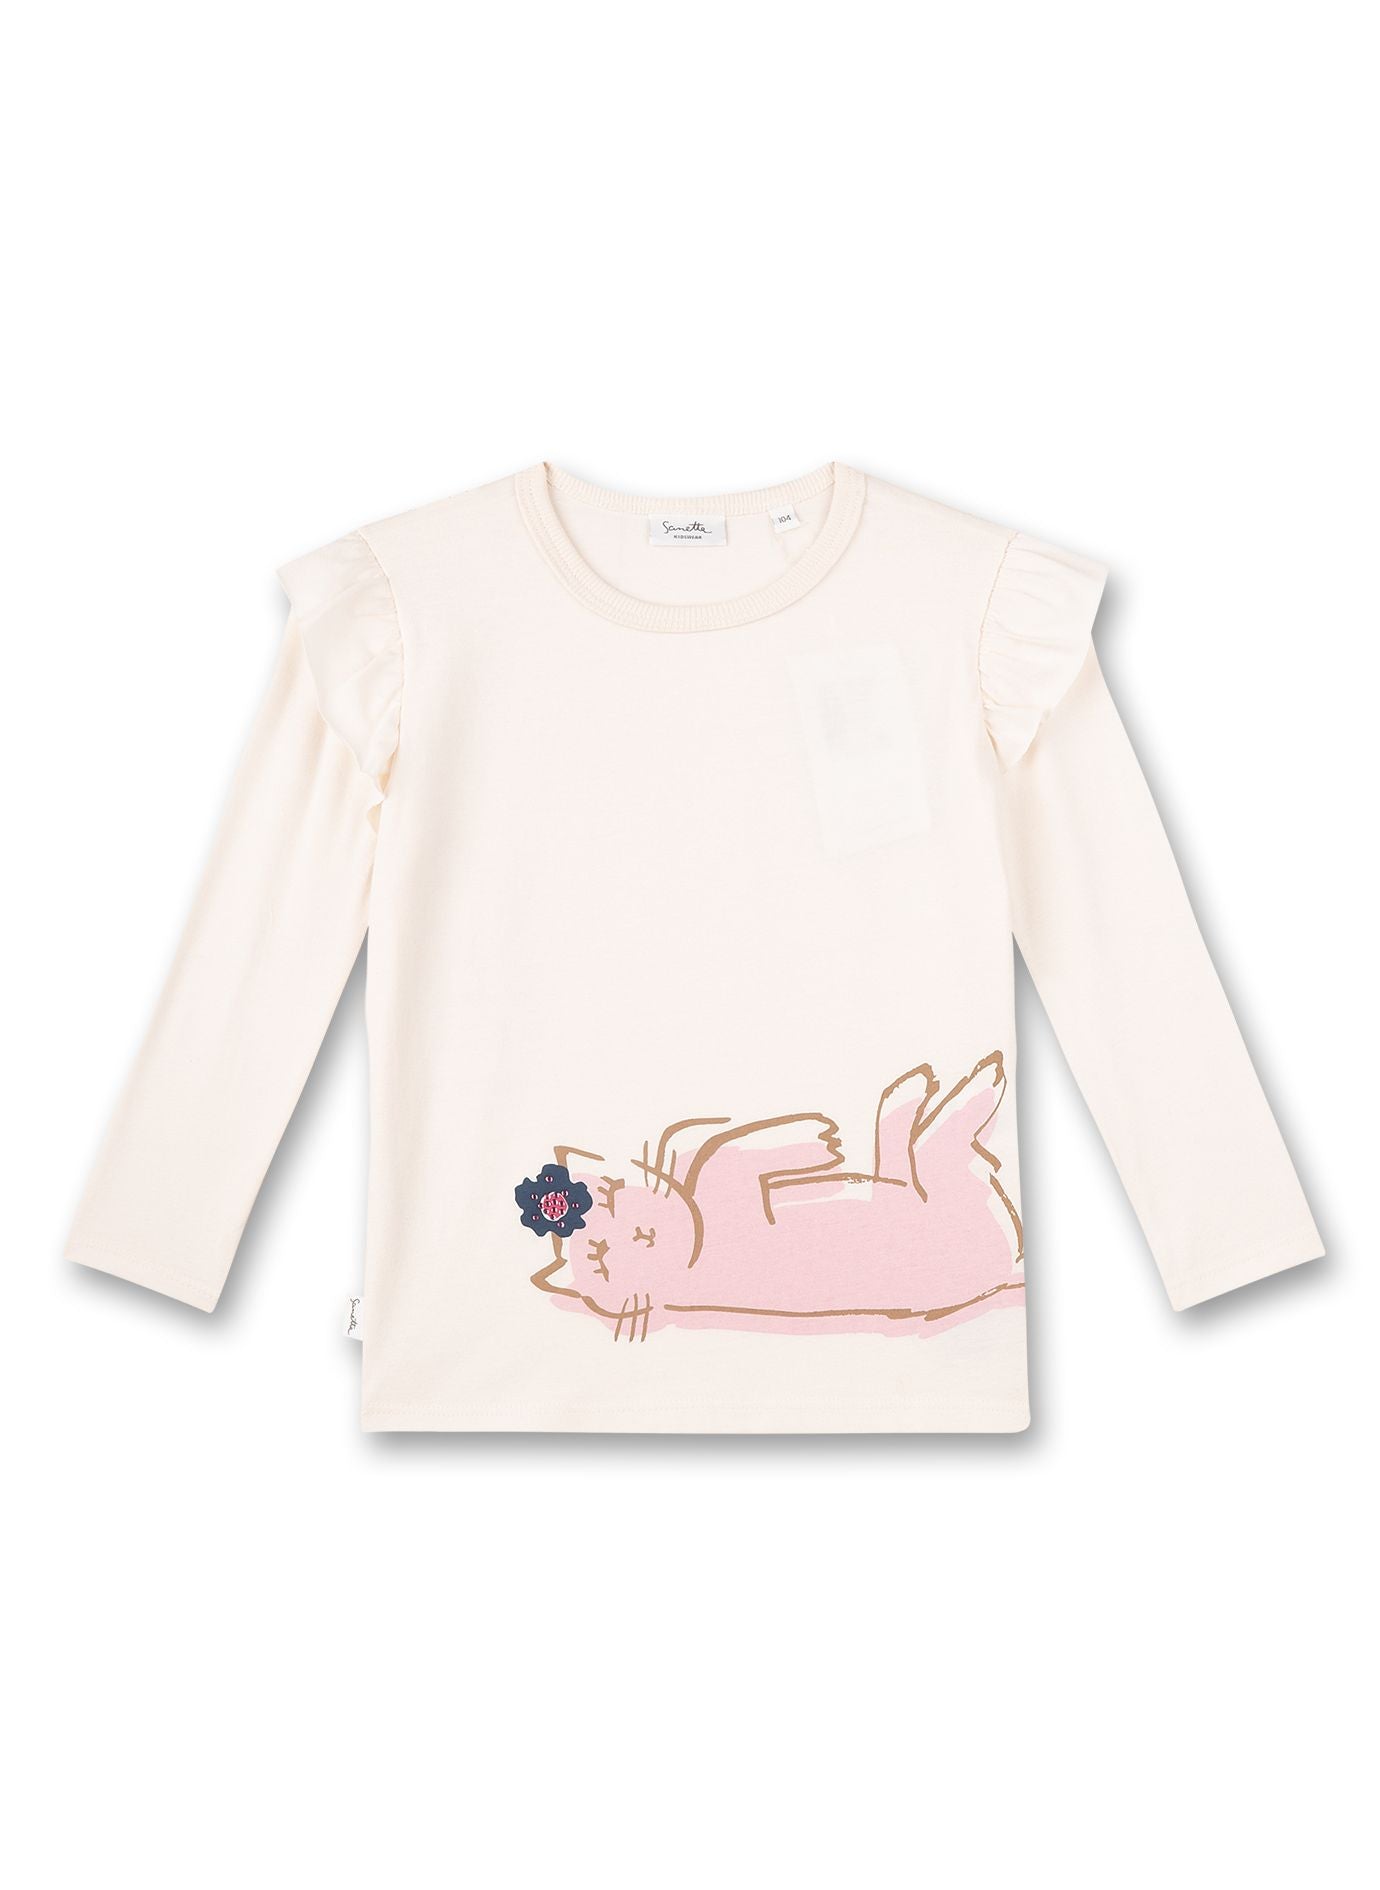 Hübsches Mädchen-Langarmshirt von Sanetta Kidswear mit Rüschen-Applikationen an den Schultern und einem niedlichen Katzen-Motiv.